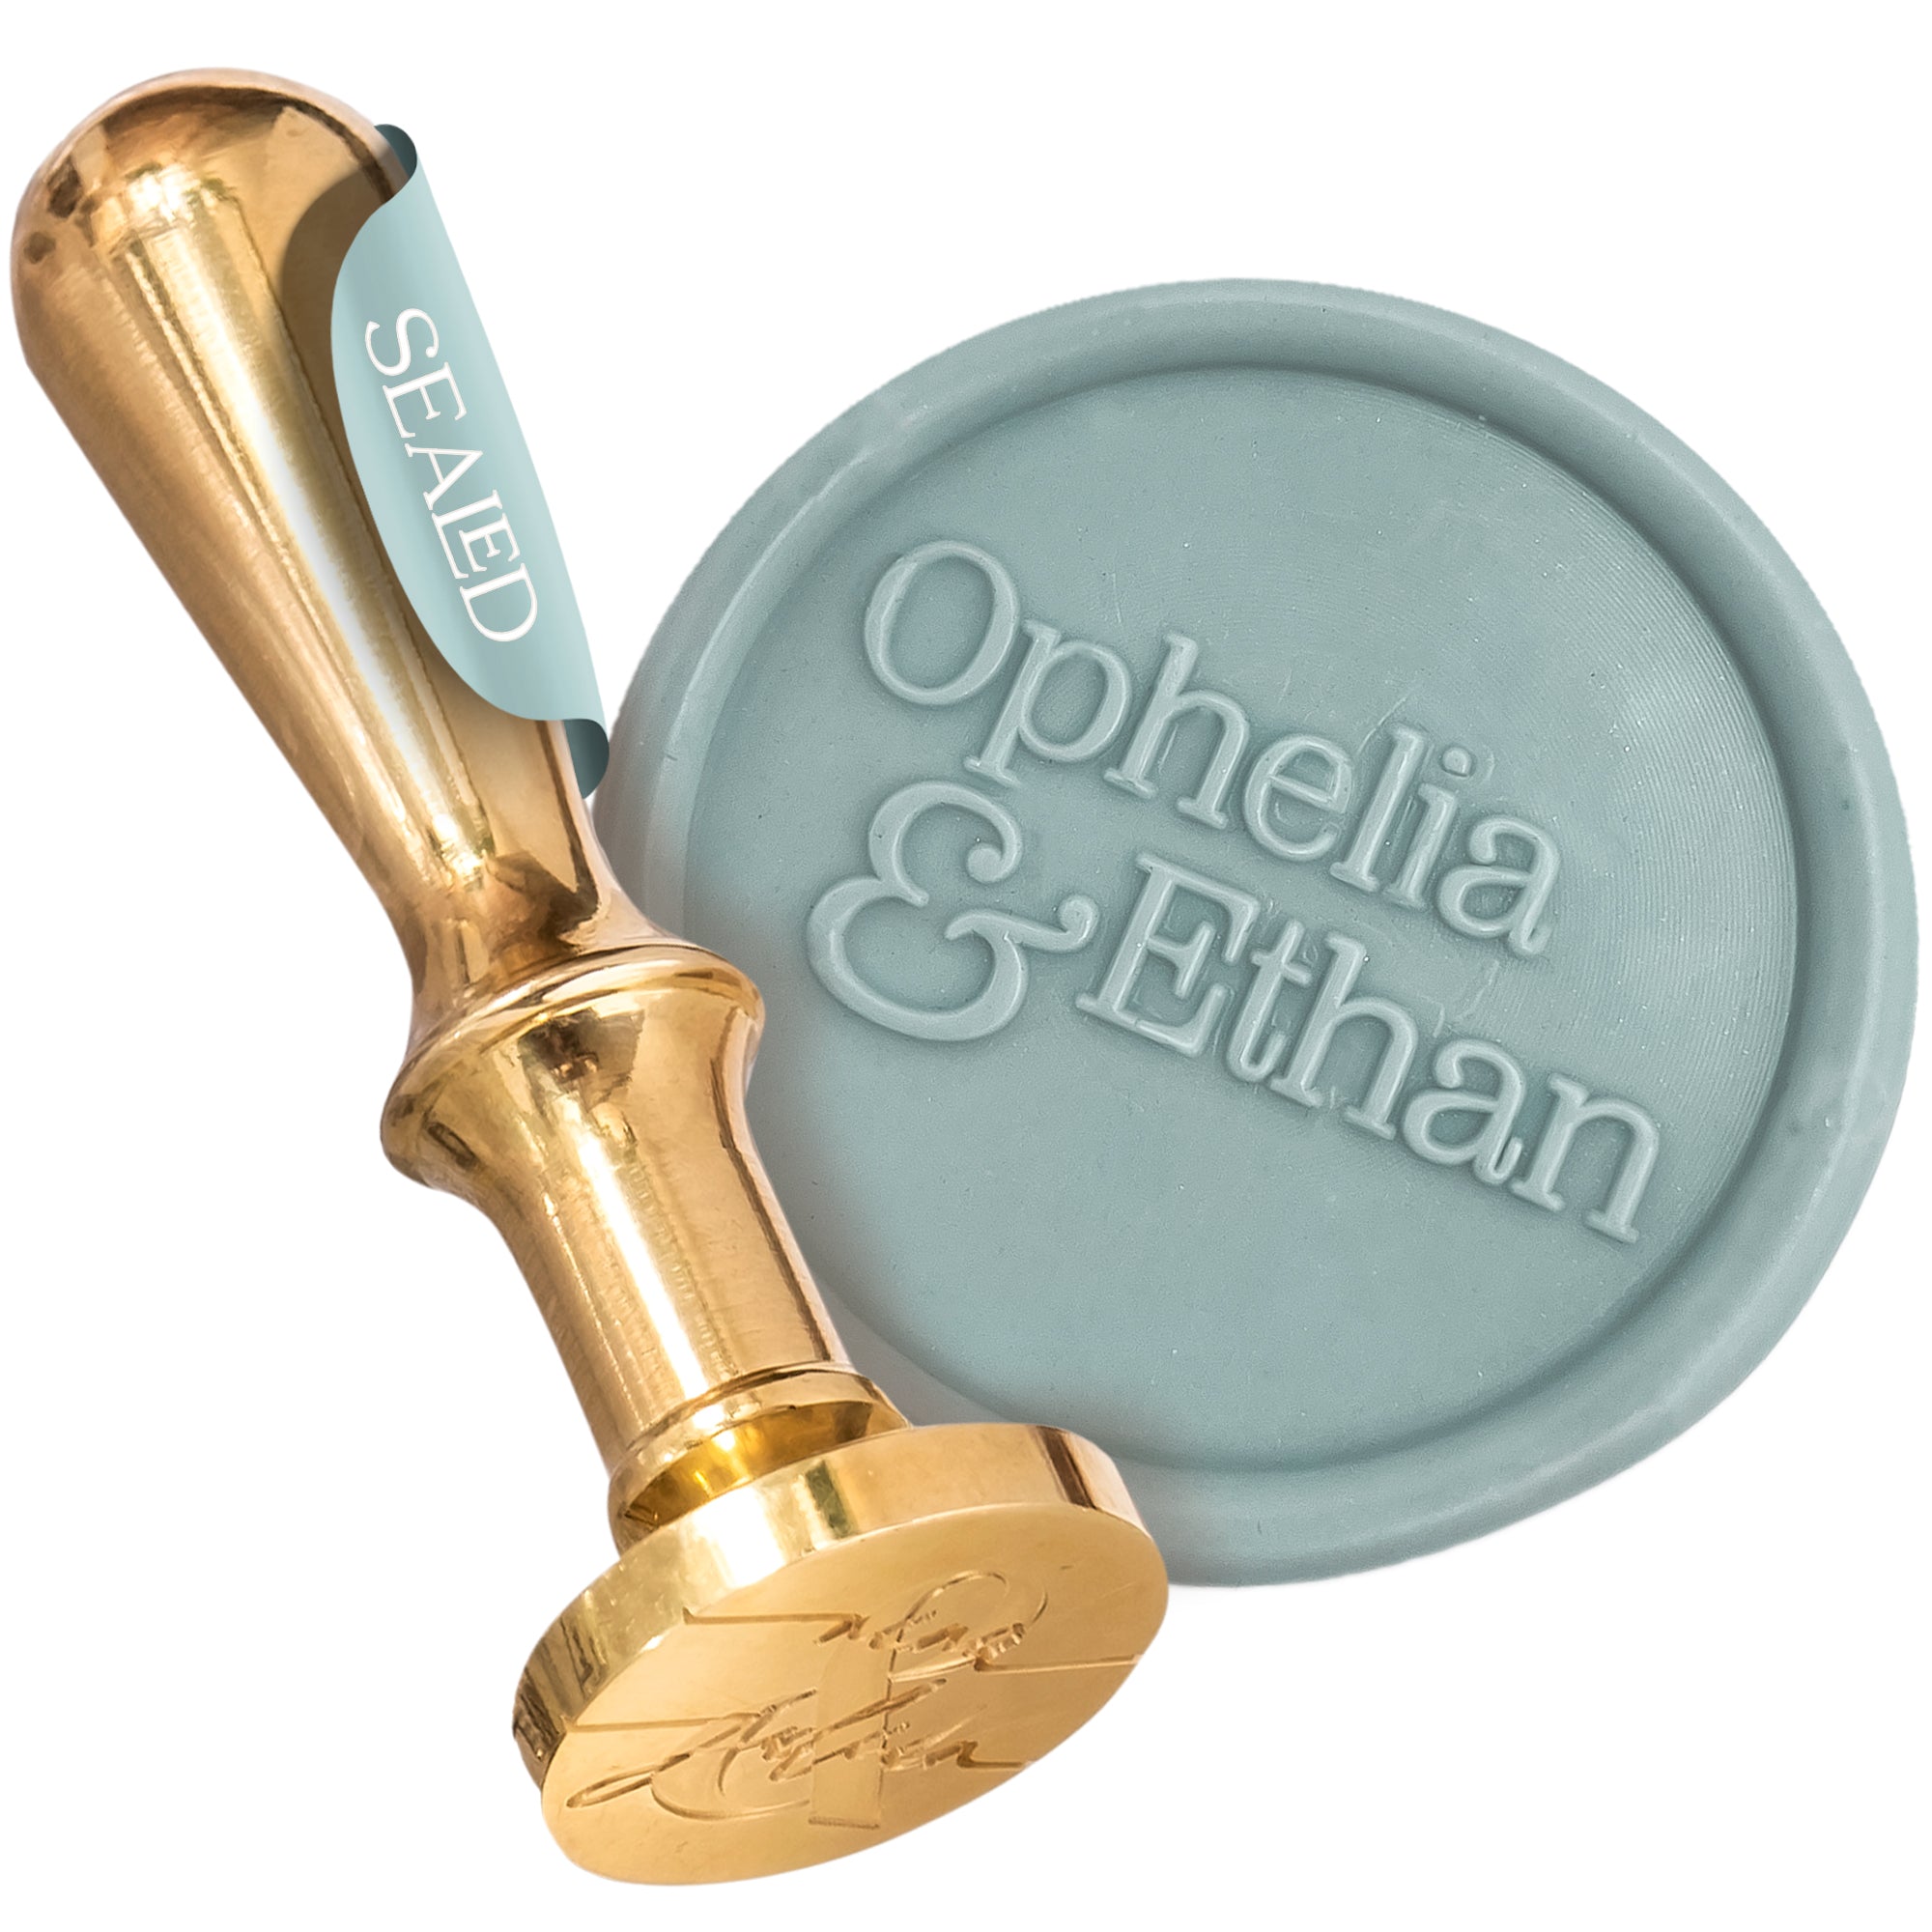 Personalisierter Siegelstempel "Ophelia" - Wachssiegel Stempel mit anpassbaren Namen